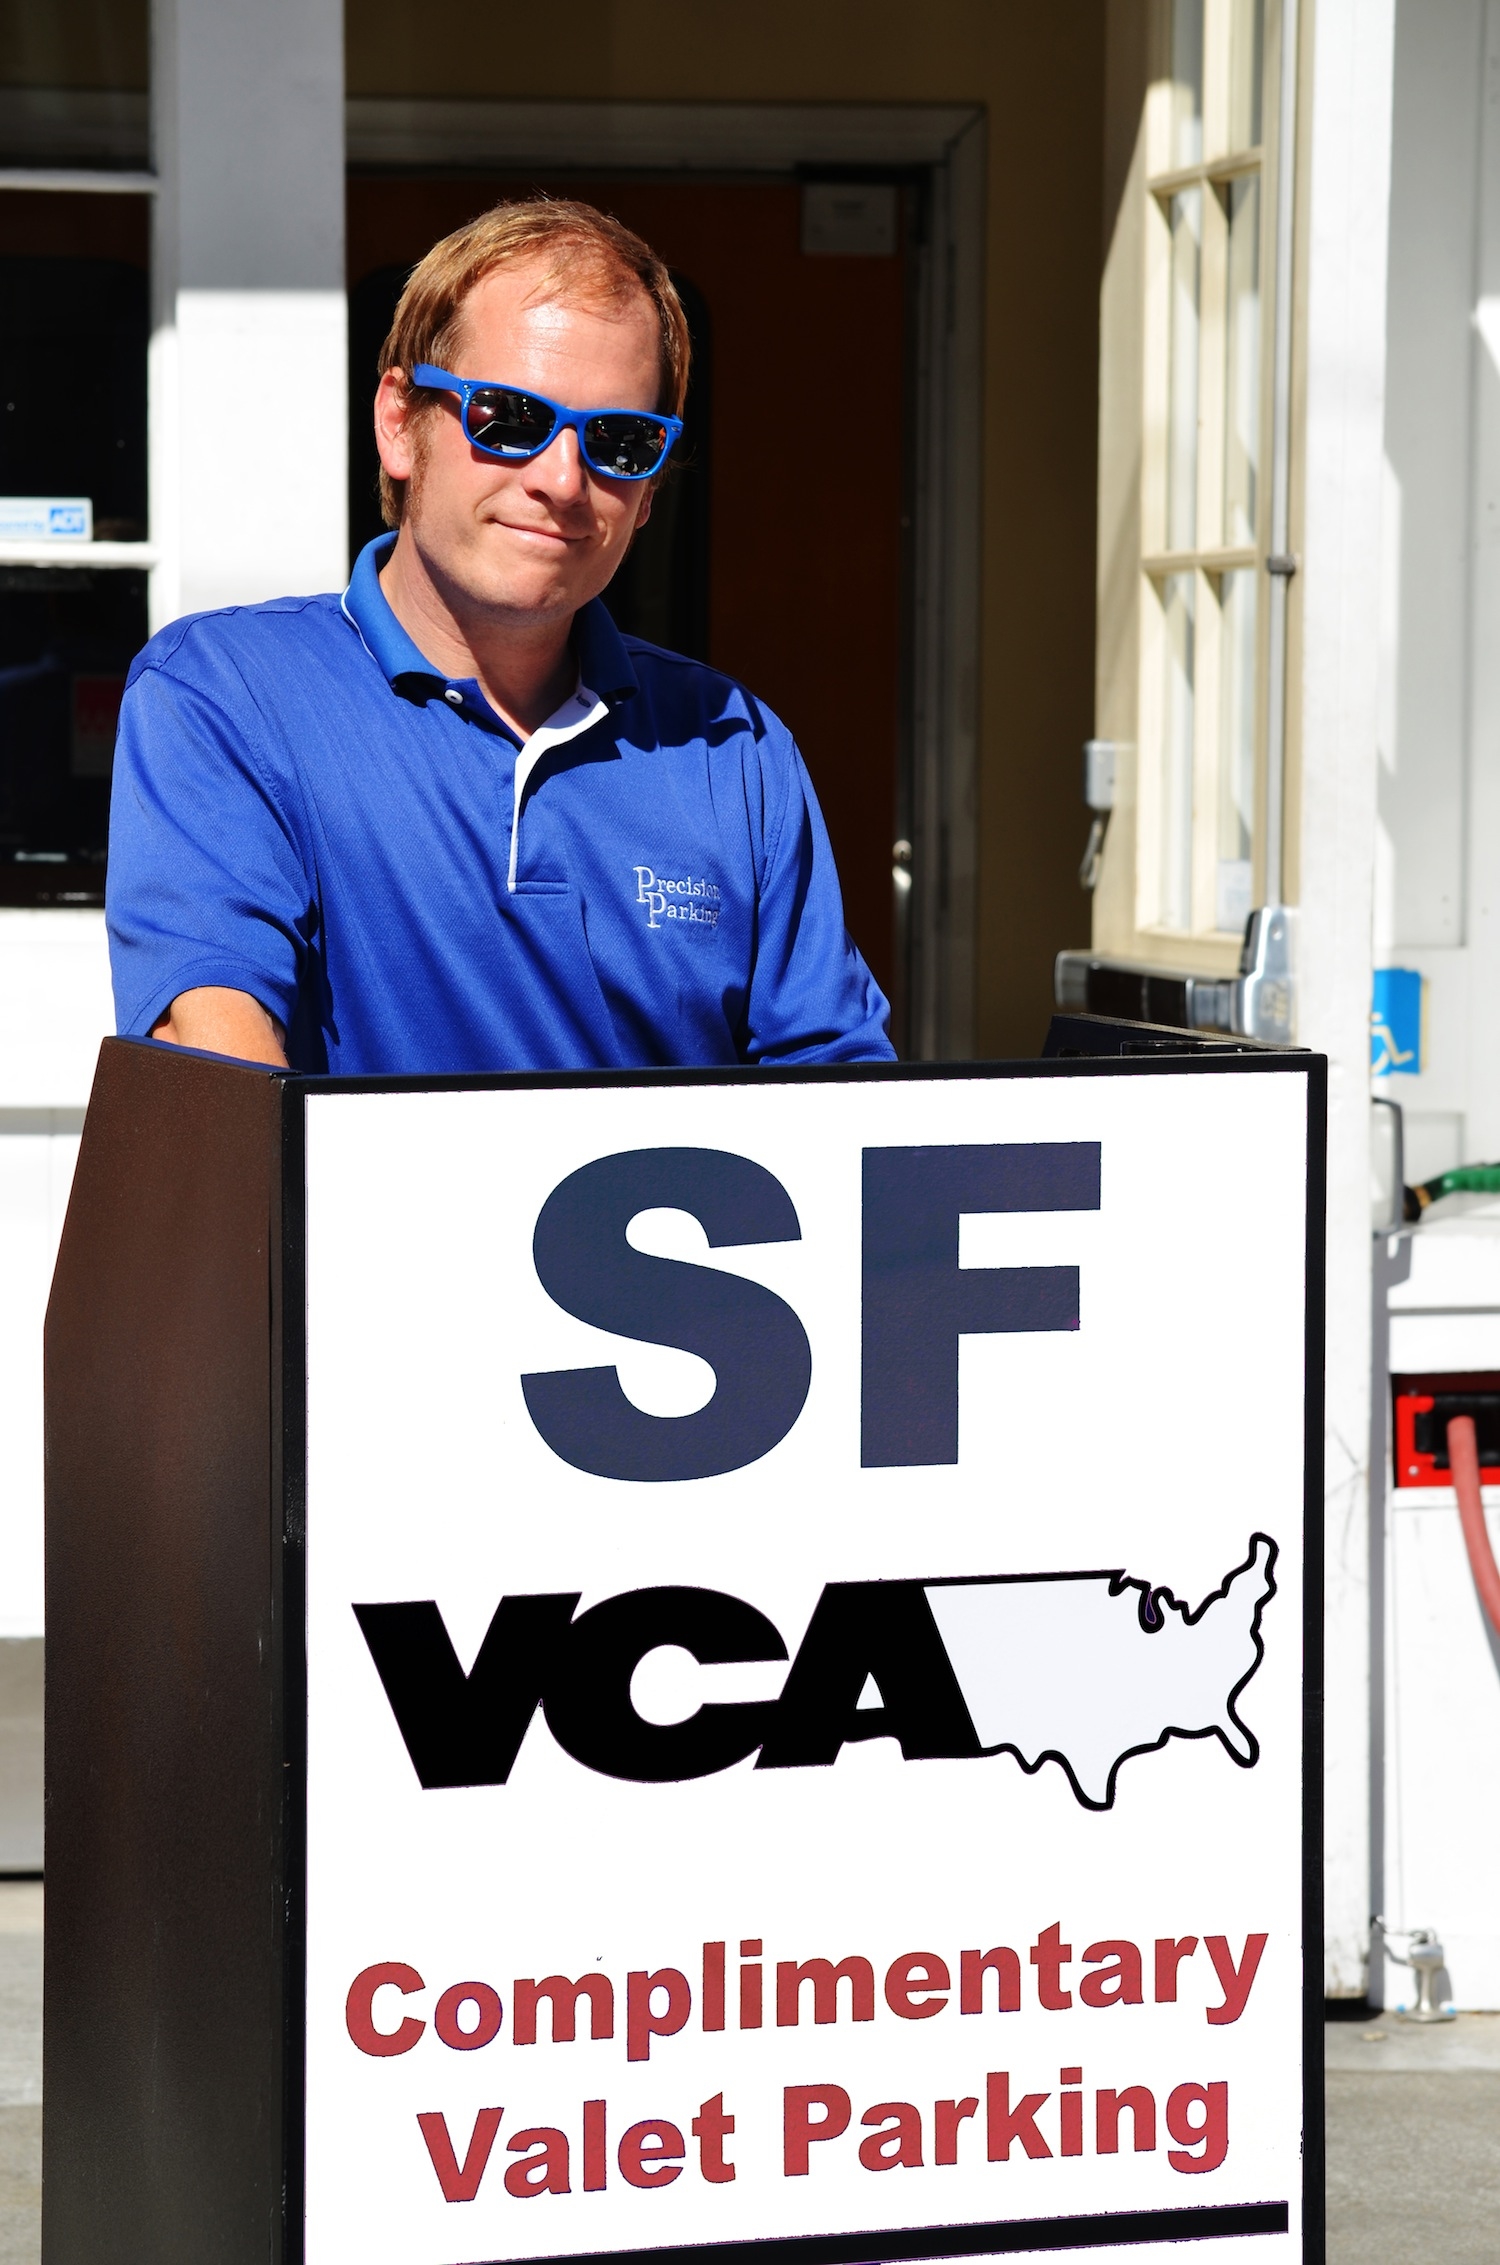 VCA San Francisco Veterinary Specialists Photo